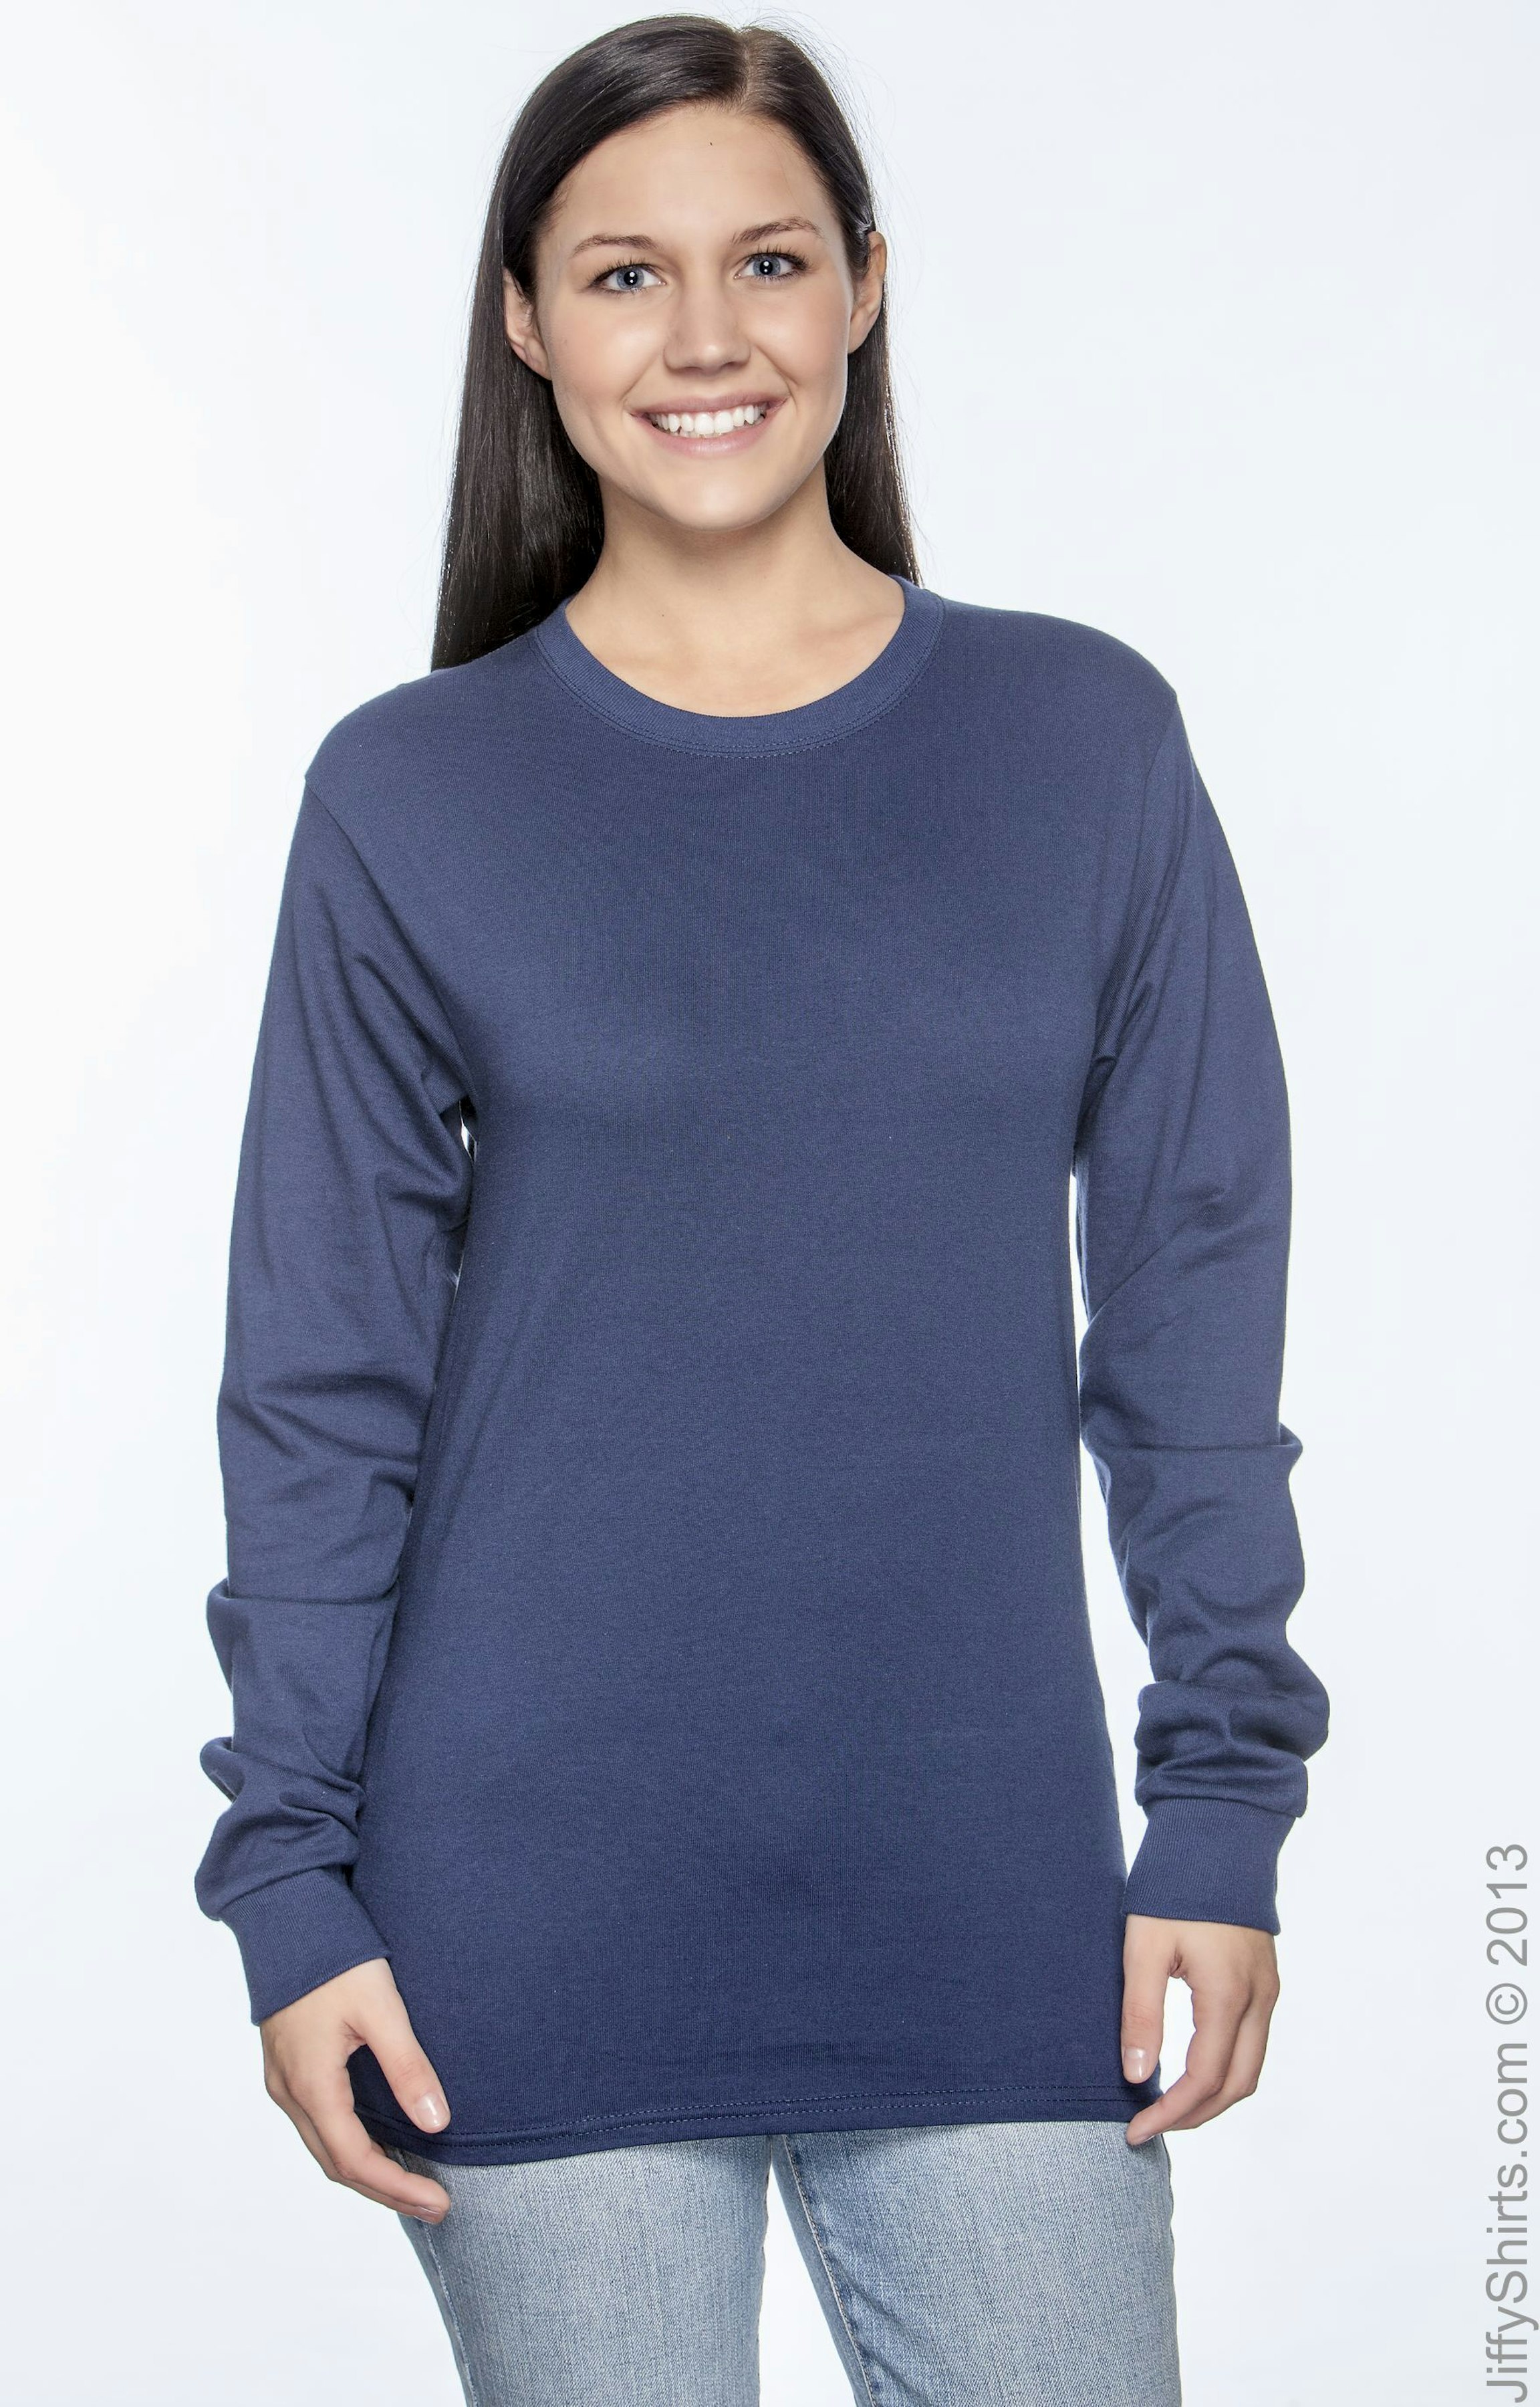 Hanes 5586 Unisex 6.1 oz. TaglessÂ® Long-Sleeve T-Shirt - JiffyShirts.com